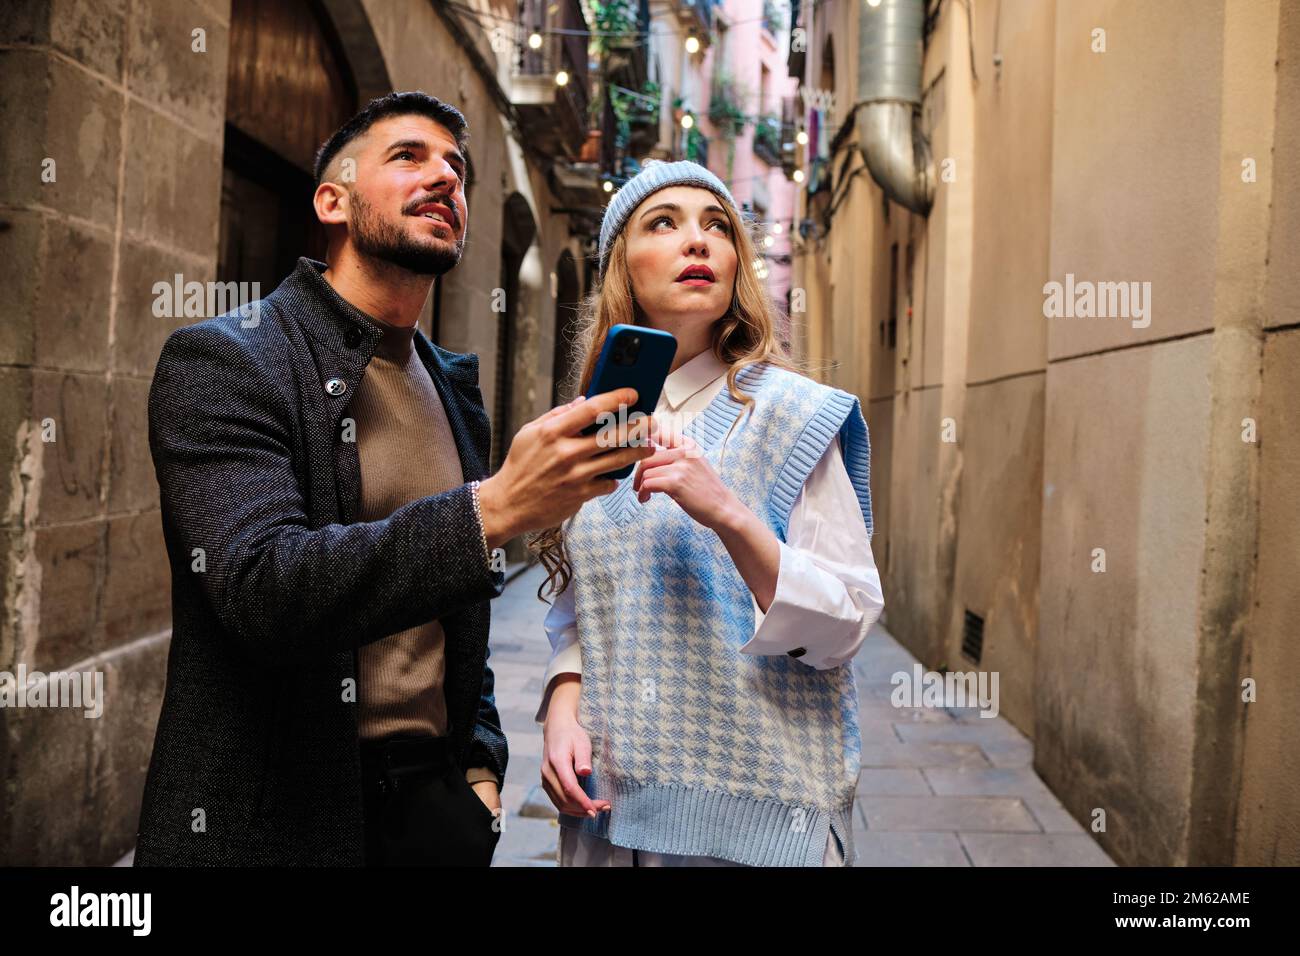 Ein verlorenes Touristenpaar, das sich mit dem Handy aufhält Stockfoto